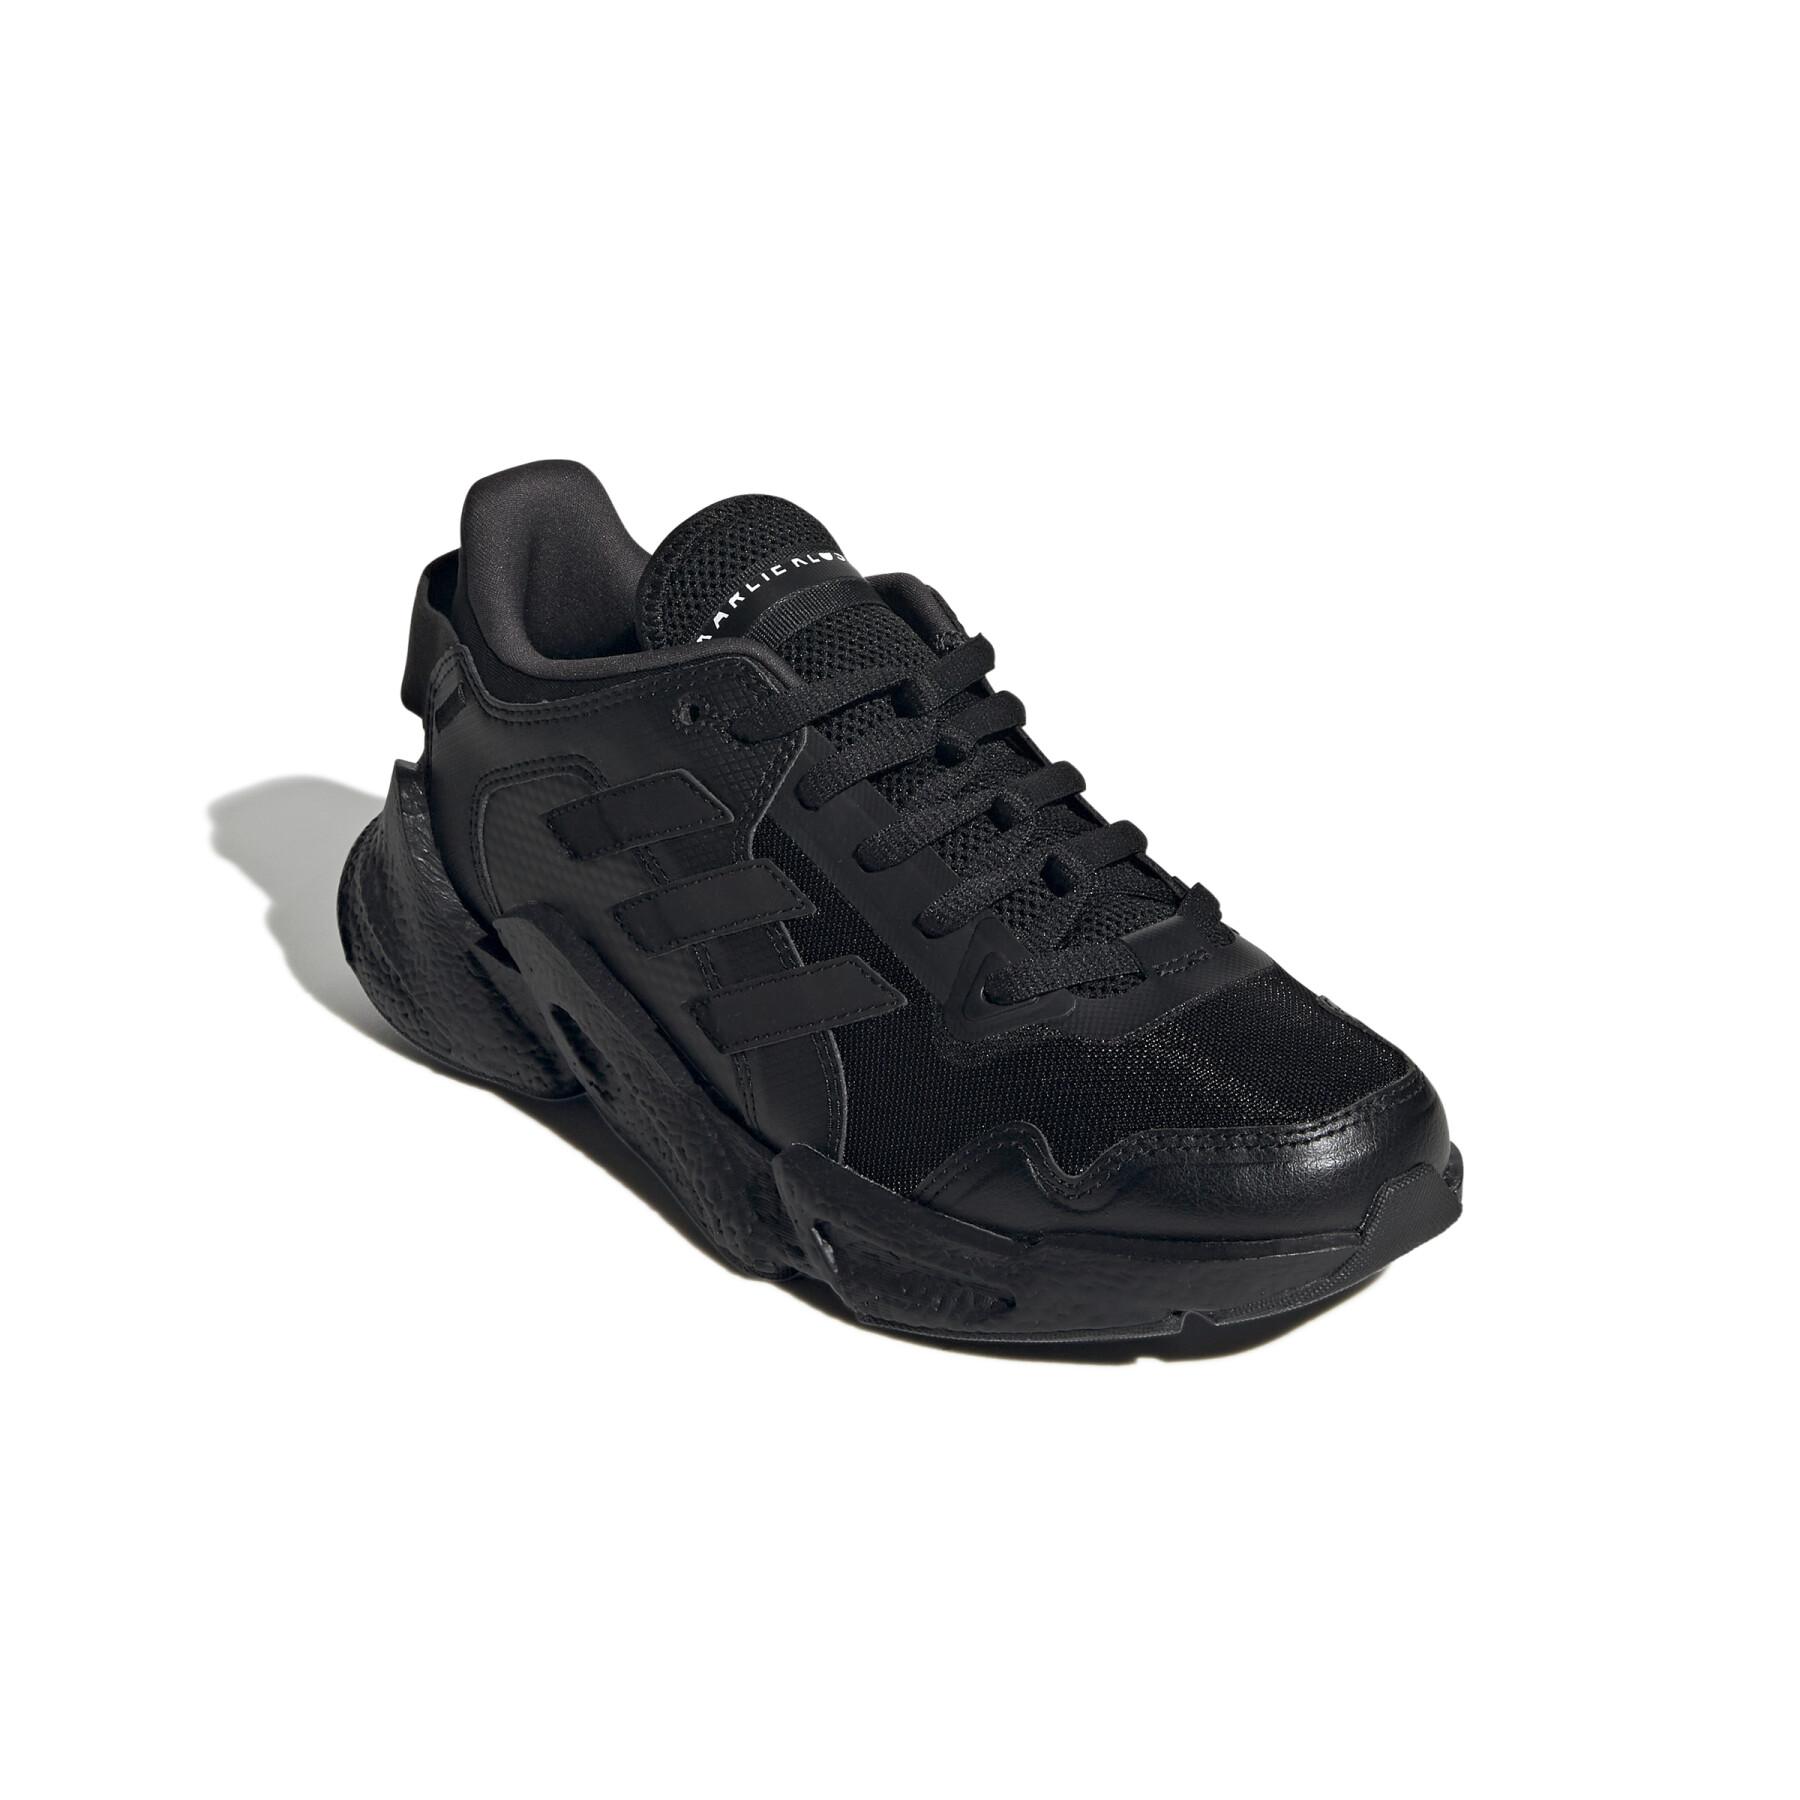 Zapatillas de running para mujer adidas Karlie Kloss X9000